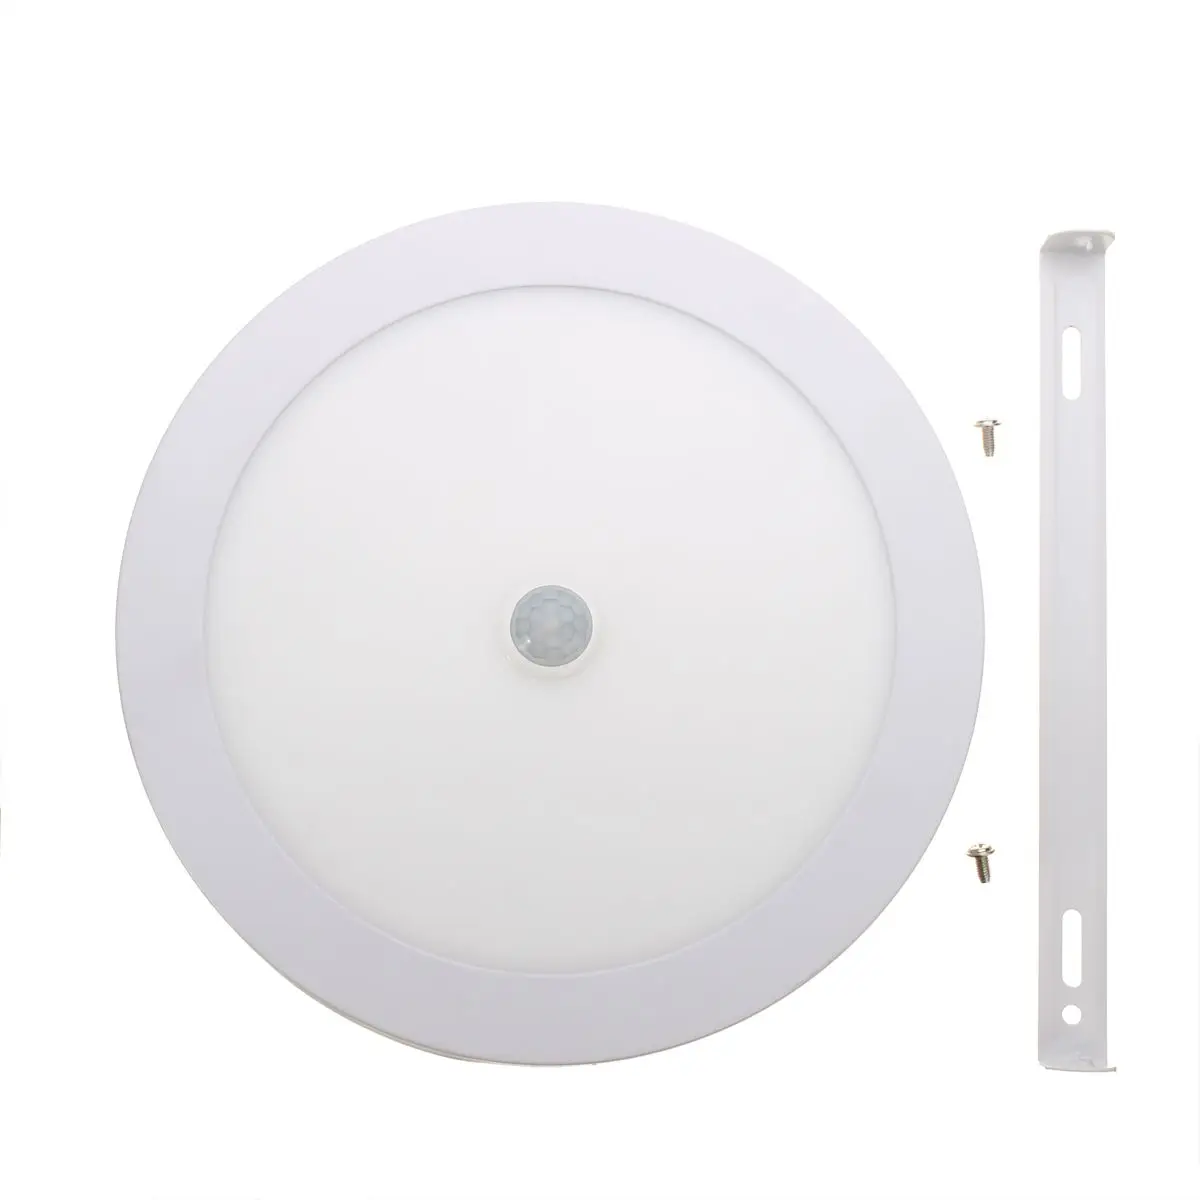 6 Вт потолочный светильник 2835smd светильник+ светодиодный индукционный датчик тела потолочный светильник для кухни/фойе/балкона/коридора/ванной AC85-265V